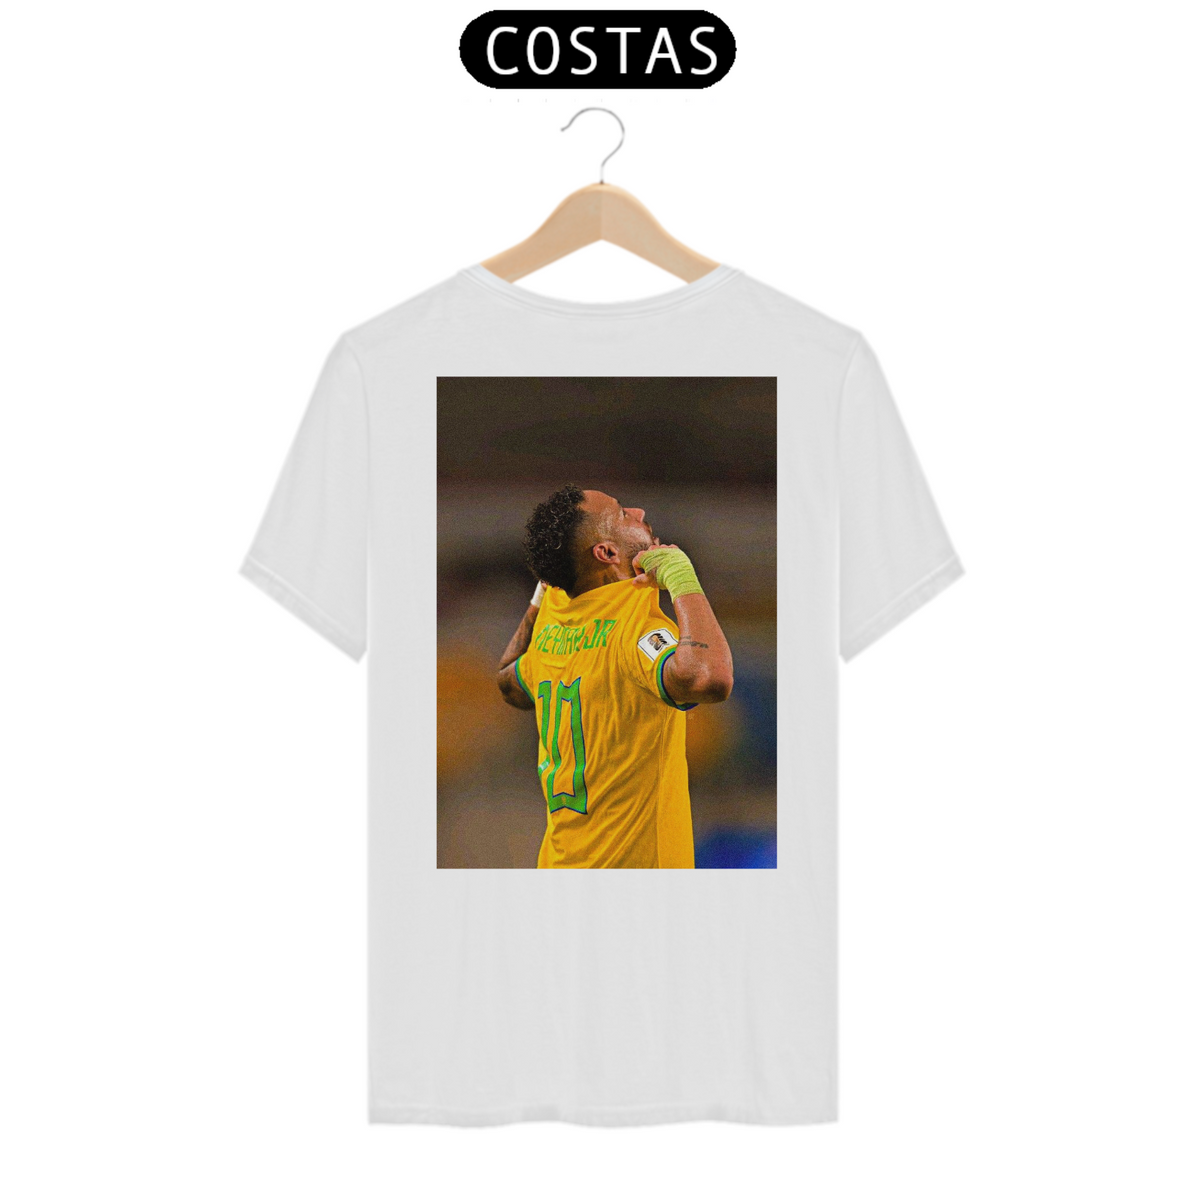 Nome do produto: Camiseta Neymar - Costas